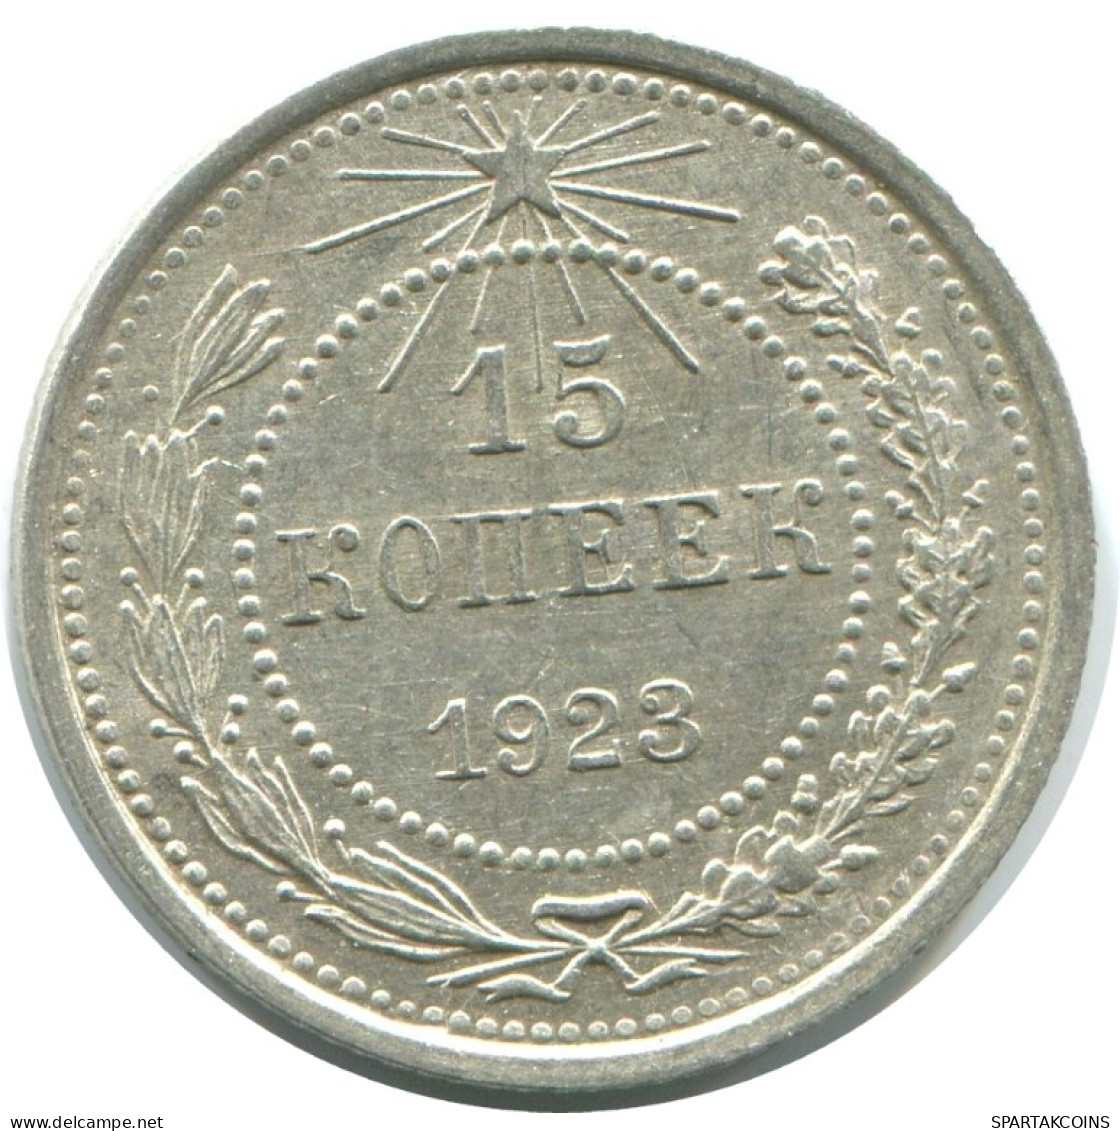 15 KOPEKS 1923 RUSSLAND RUSSIA RSFSR SILBER Münze HIGH GRADE #AF060.4.D.A - Russia